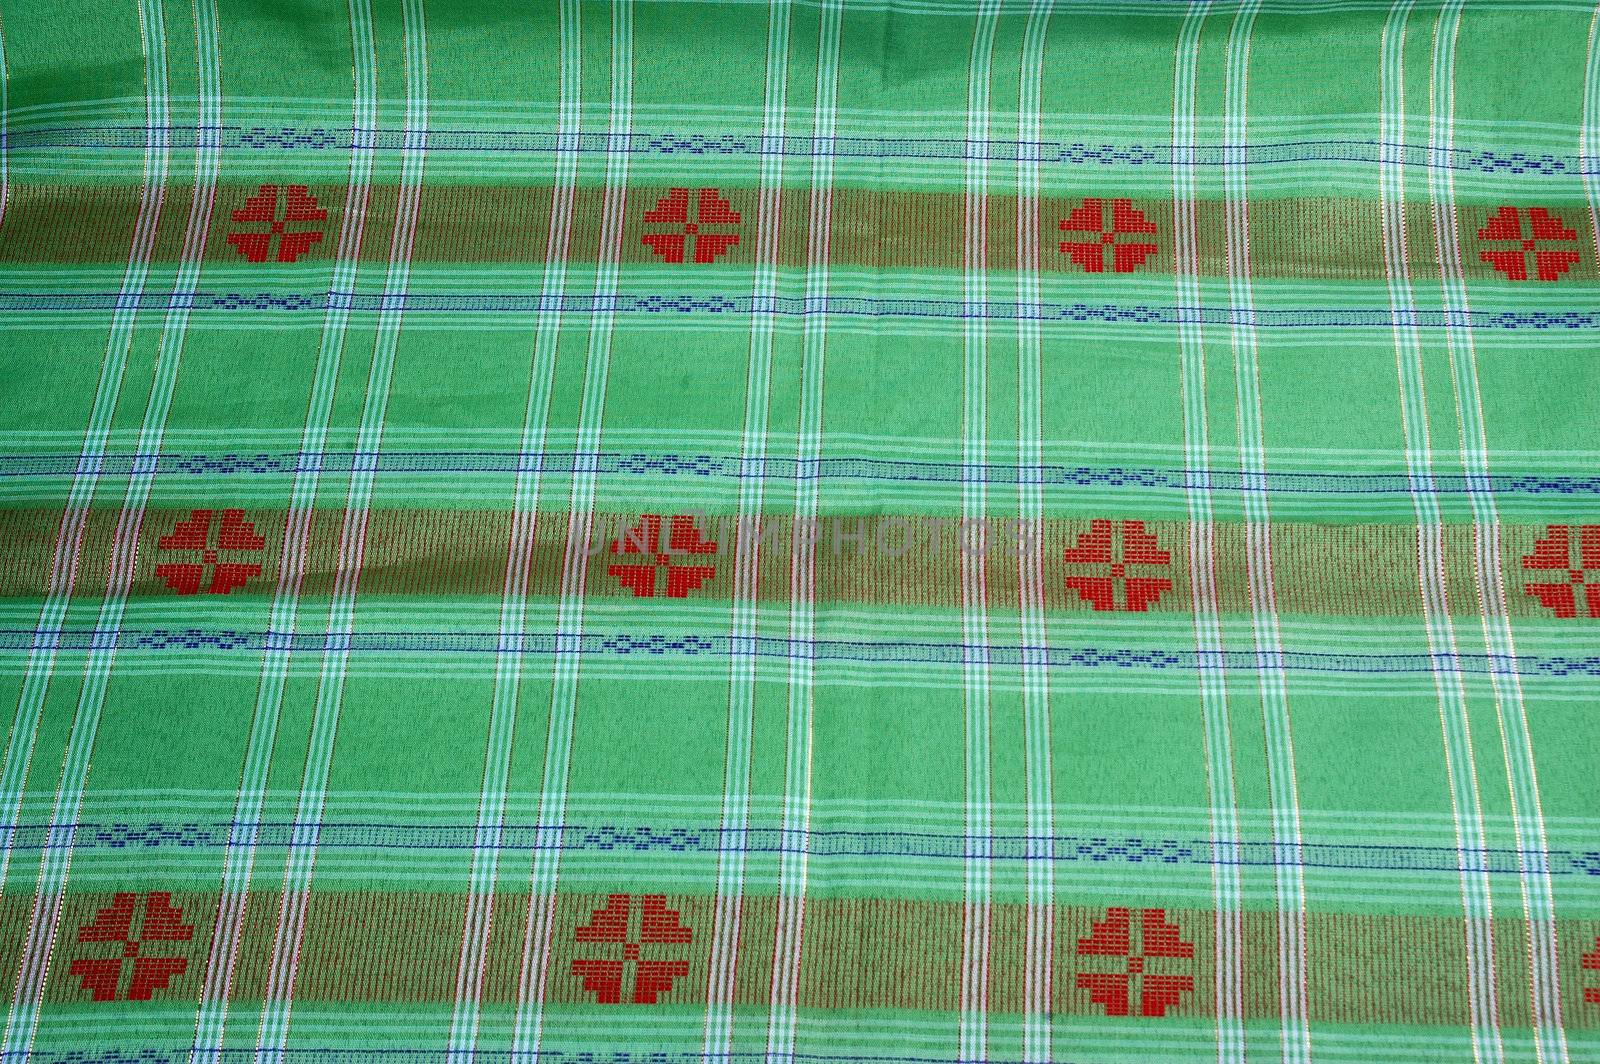 Indonesian fabric design details